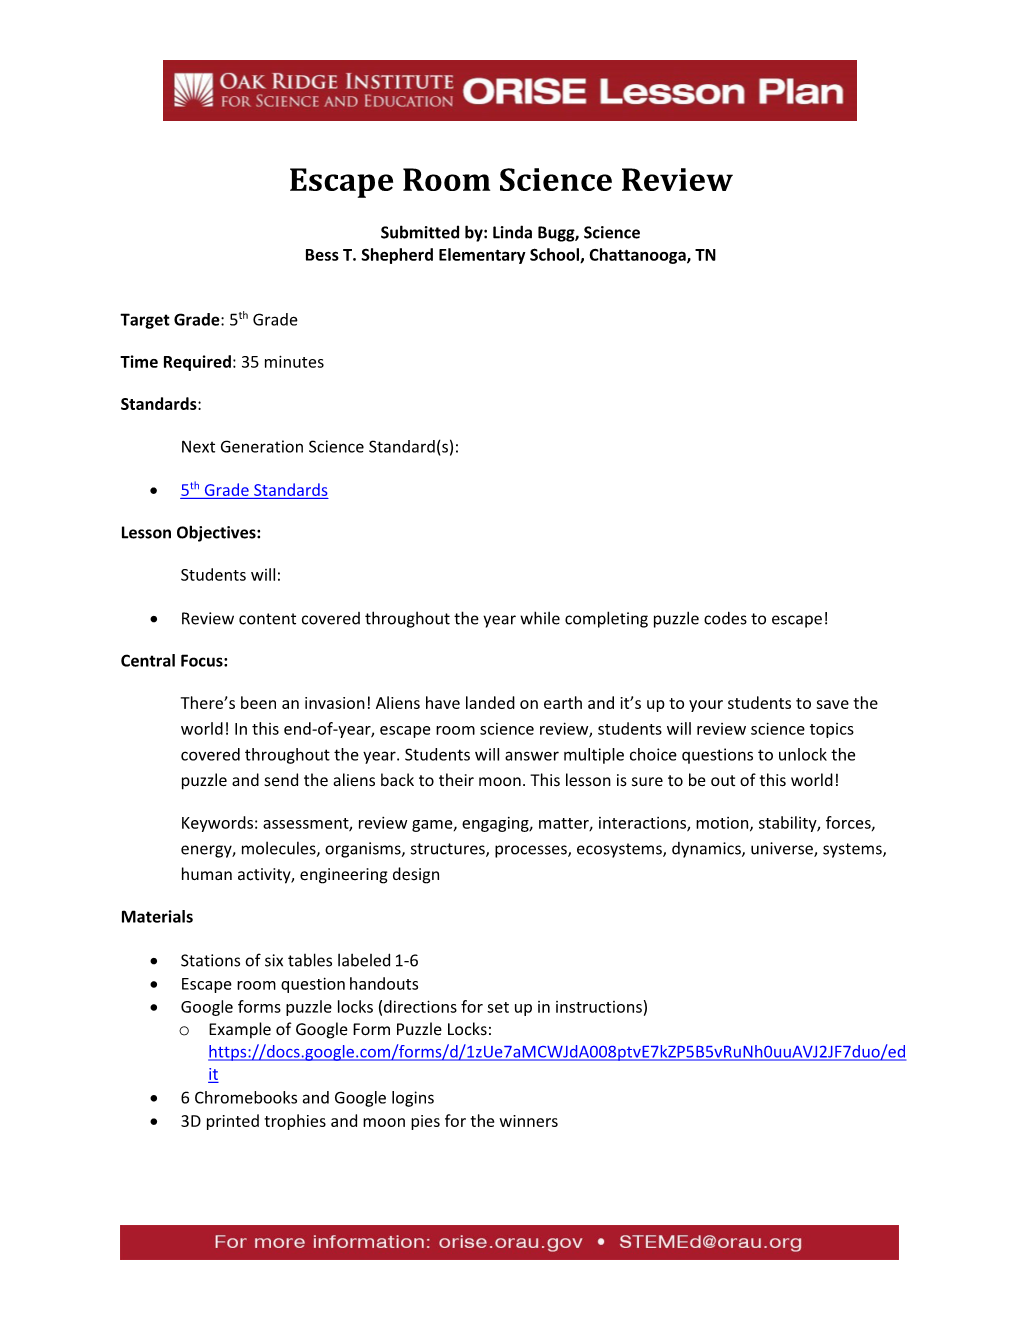 ORISE Lesson Plan: Escape Room Science Review